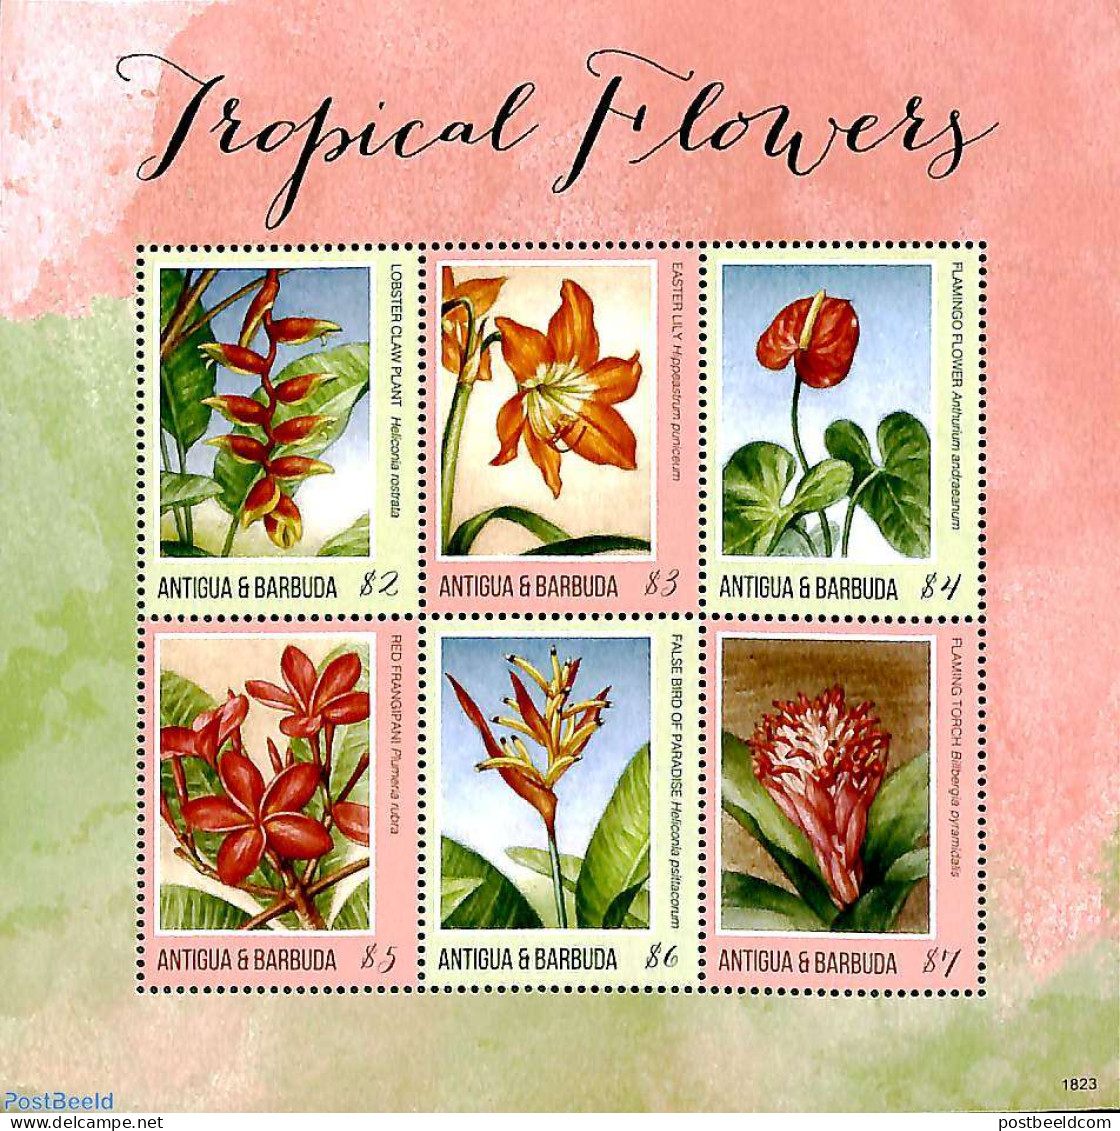 Antigua & Barbuda 2018 Tropical Flowers 6v M/s, Mint NH, Nature - Flowers & Plants - Antigua Y Barbuda (1981-...)